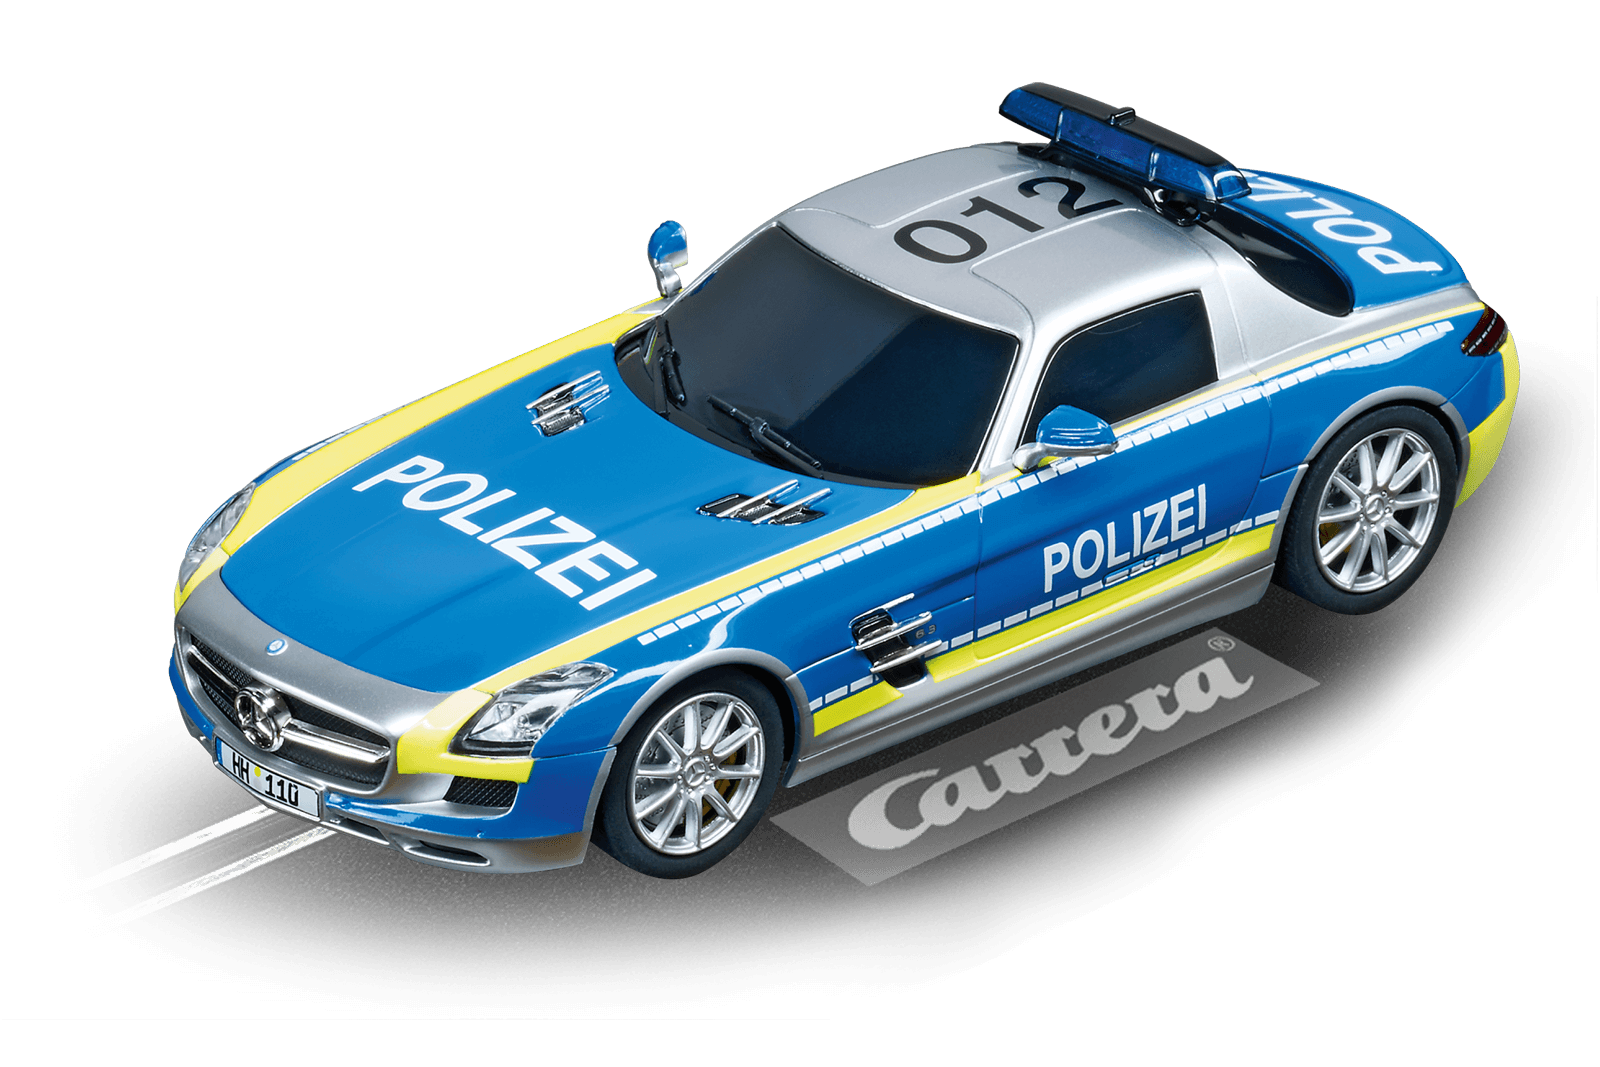 MercedesSLS AMG "Polizei" 20030793 Carrera Rennbahnen